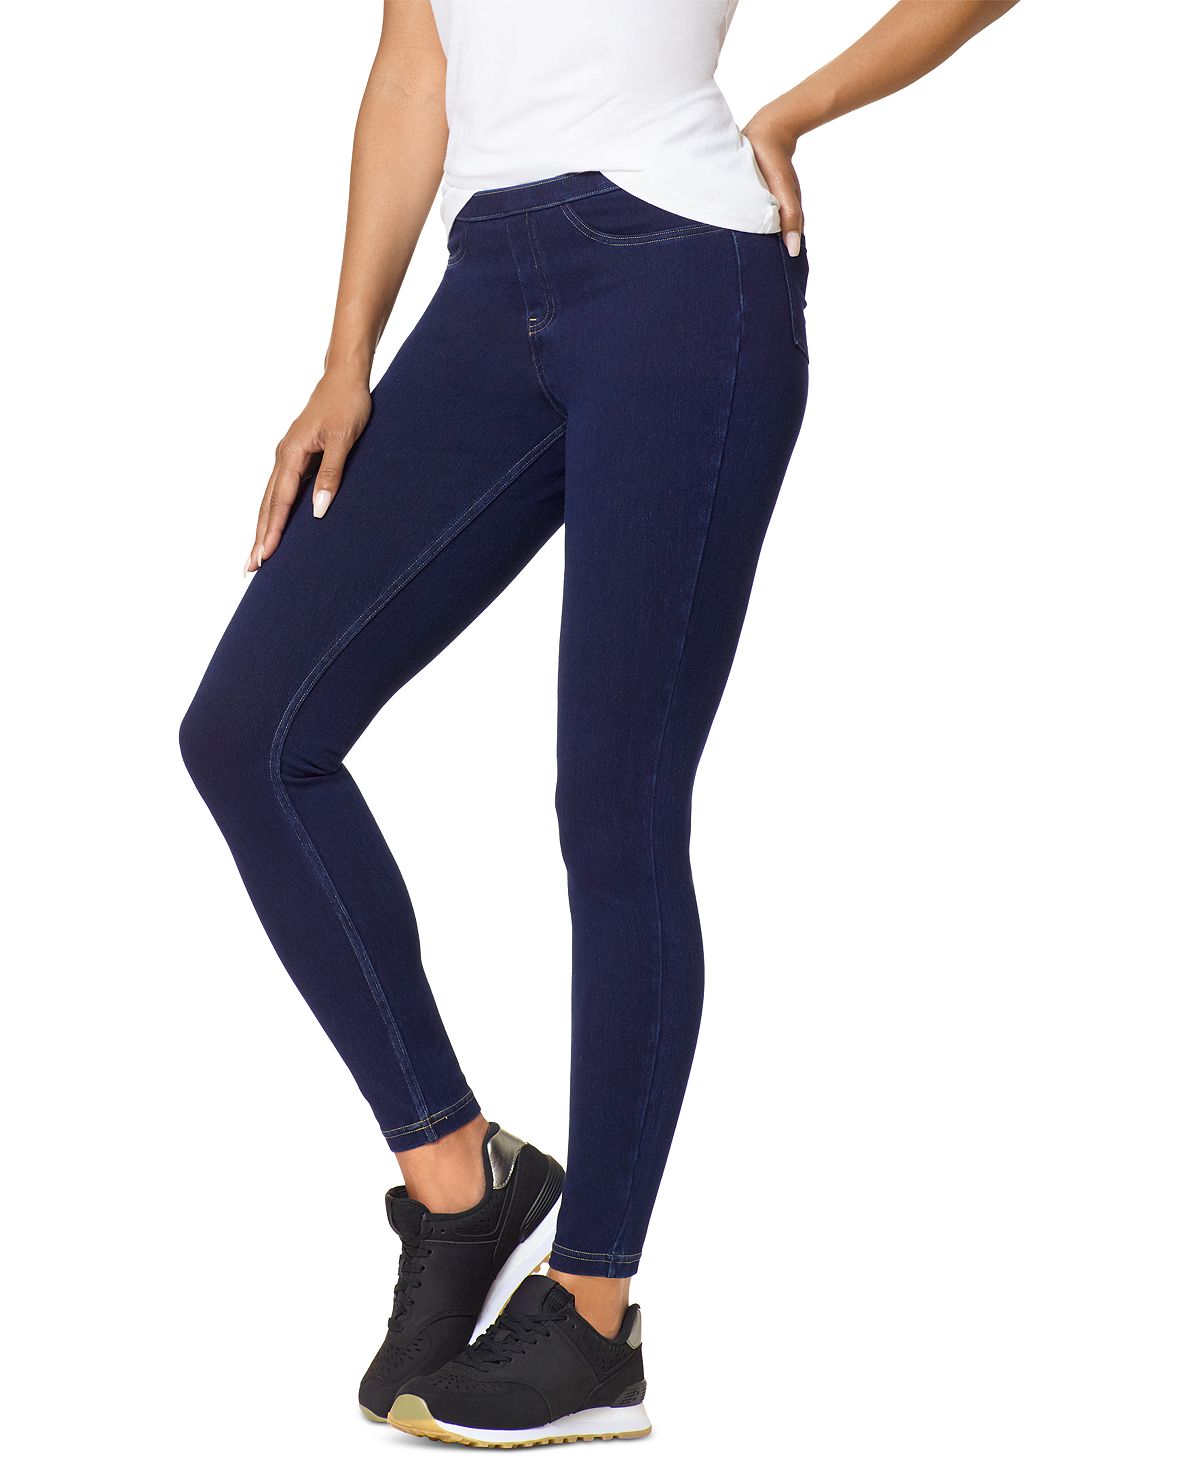 Классические эластичные джинсовые леггинсы, обычные и большие размеры Hue фотографии